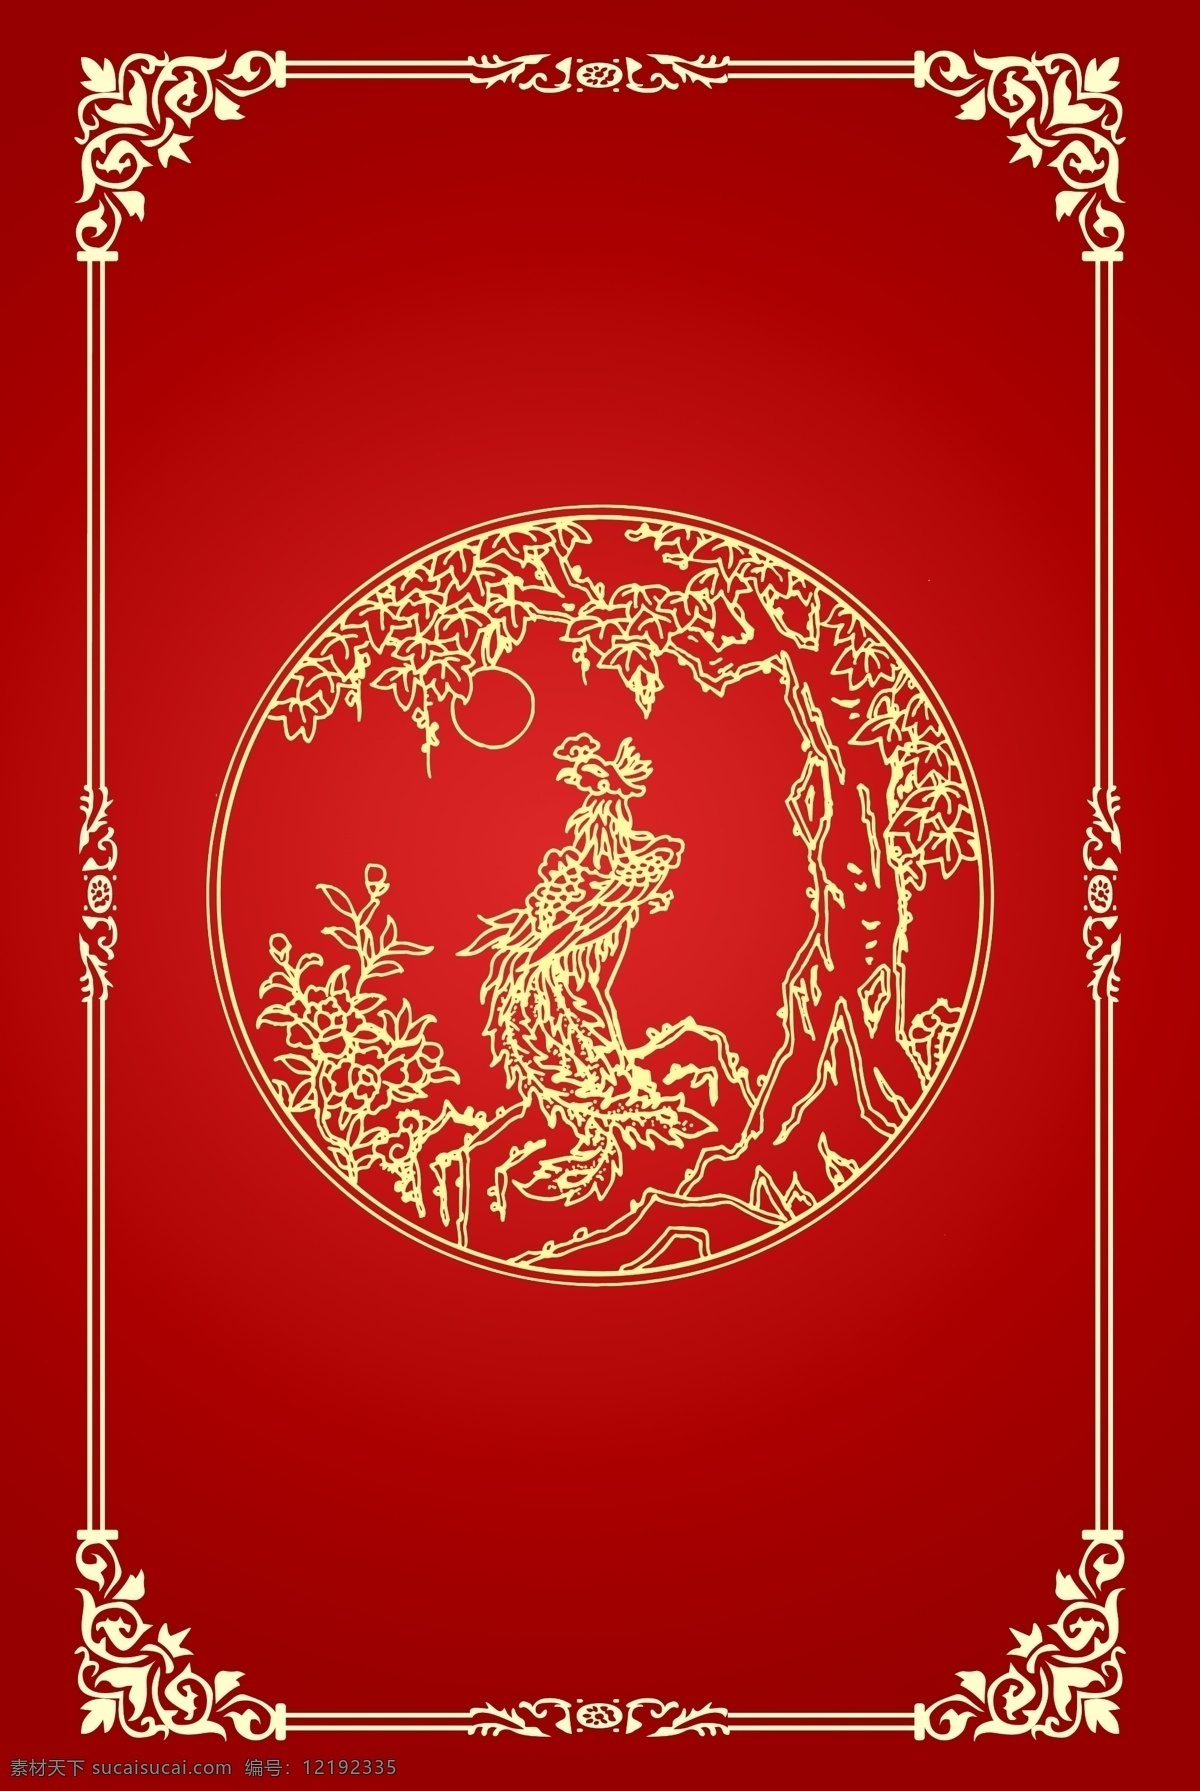 大气 中国 风 红色 传统 花纹 底纹 背景 中国风 素材库 底纹边框 背景底纹